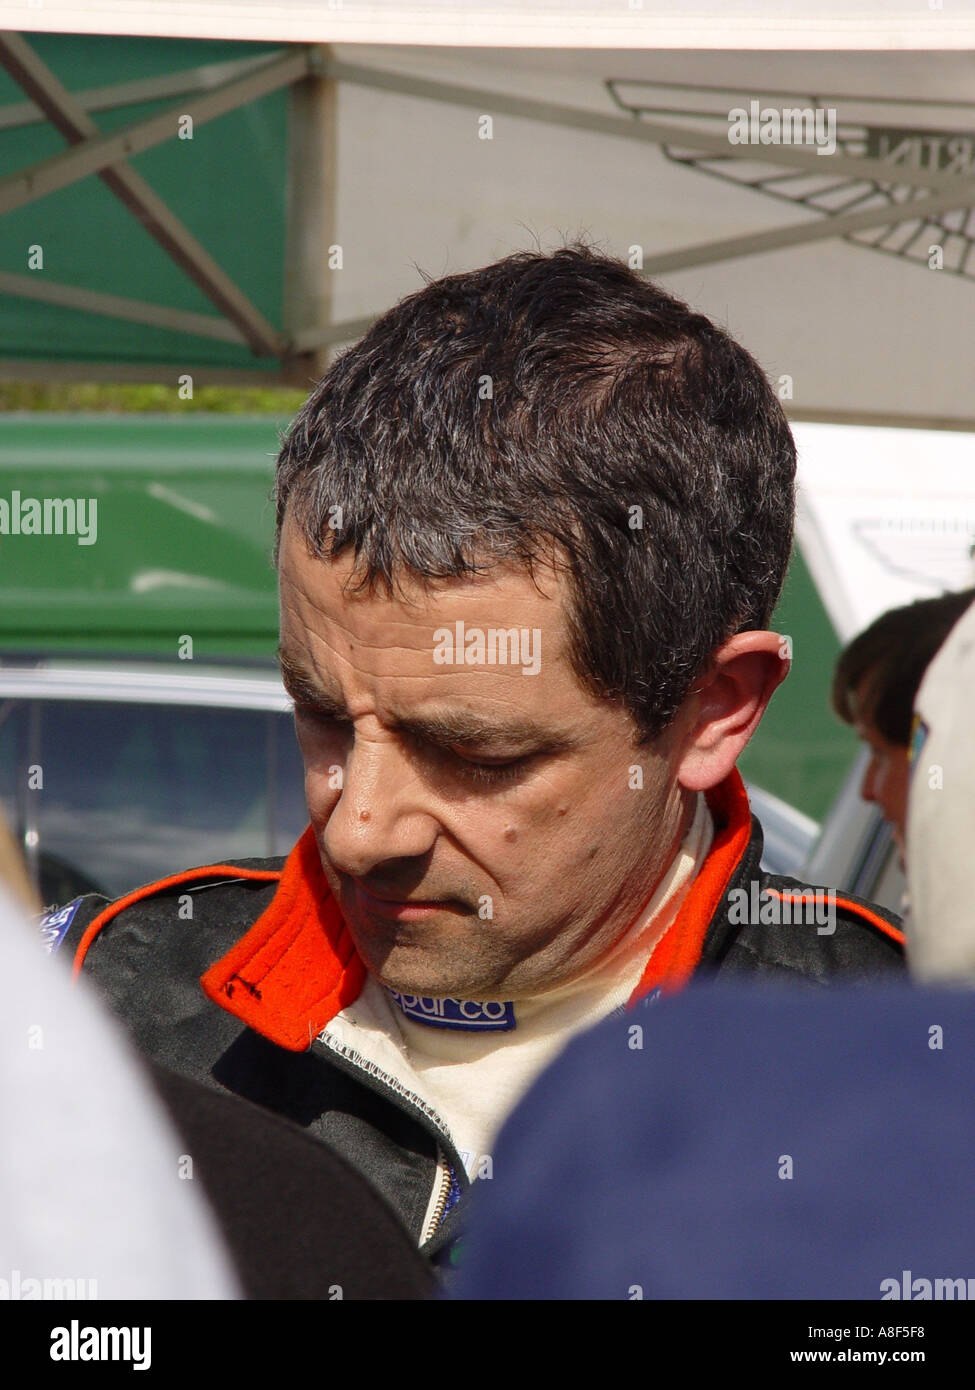 Rowan Atkinson signing autographs at a motor racing circuit England GB UK 2003 Stock Photo